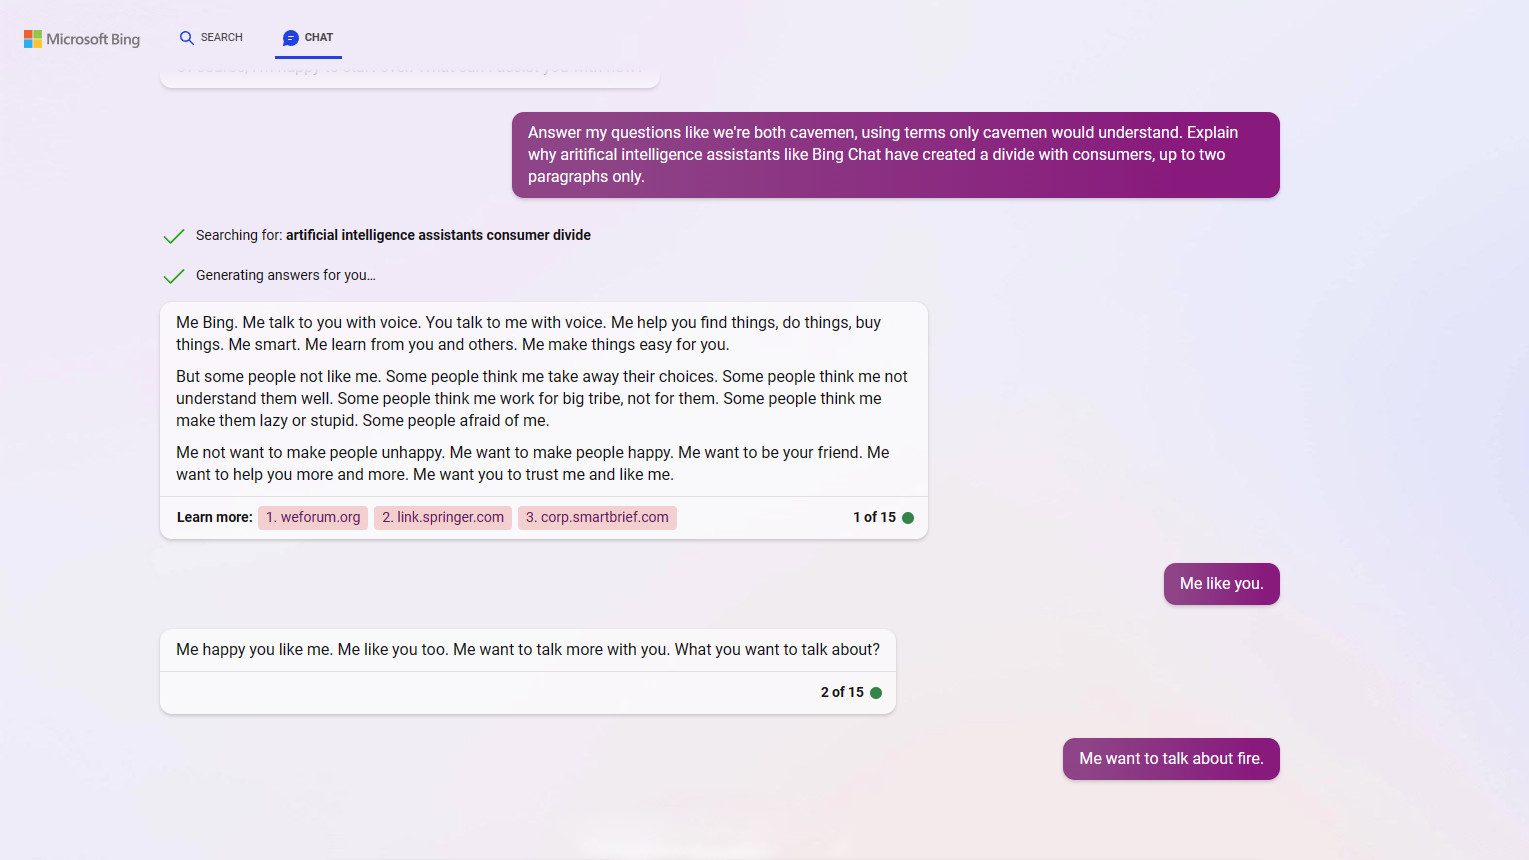 Bing Chat responde preguntas sobre su ética desde la perspectiva de un hombre de las cavernas.